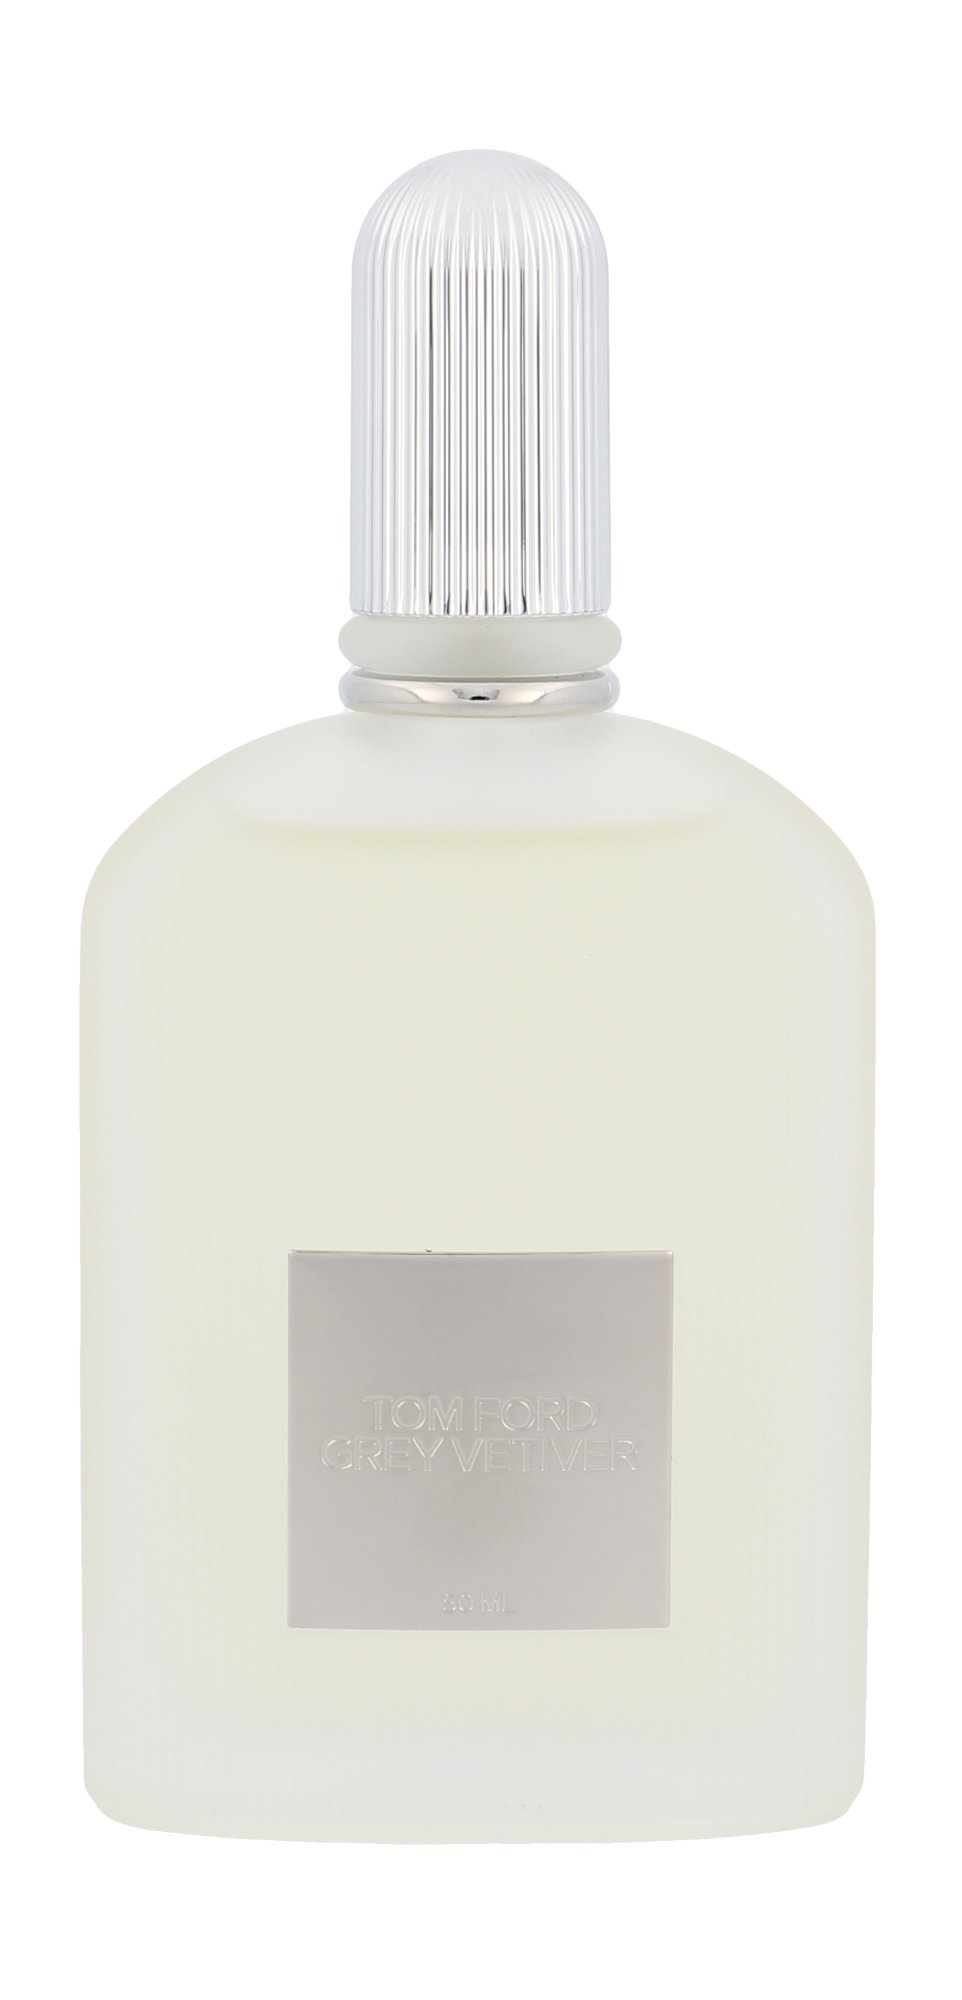 TOM FORD Grey Vetiver, Parfumovaná voda 50ml